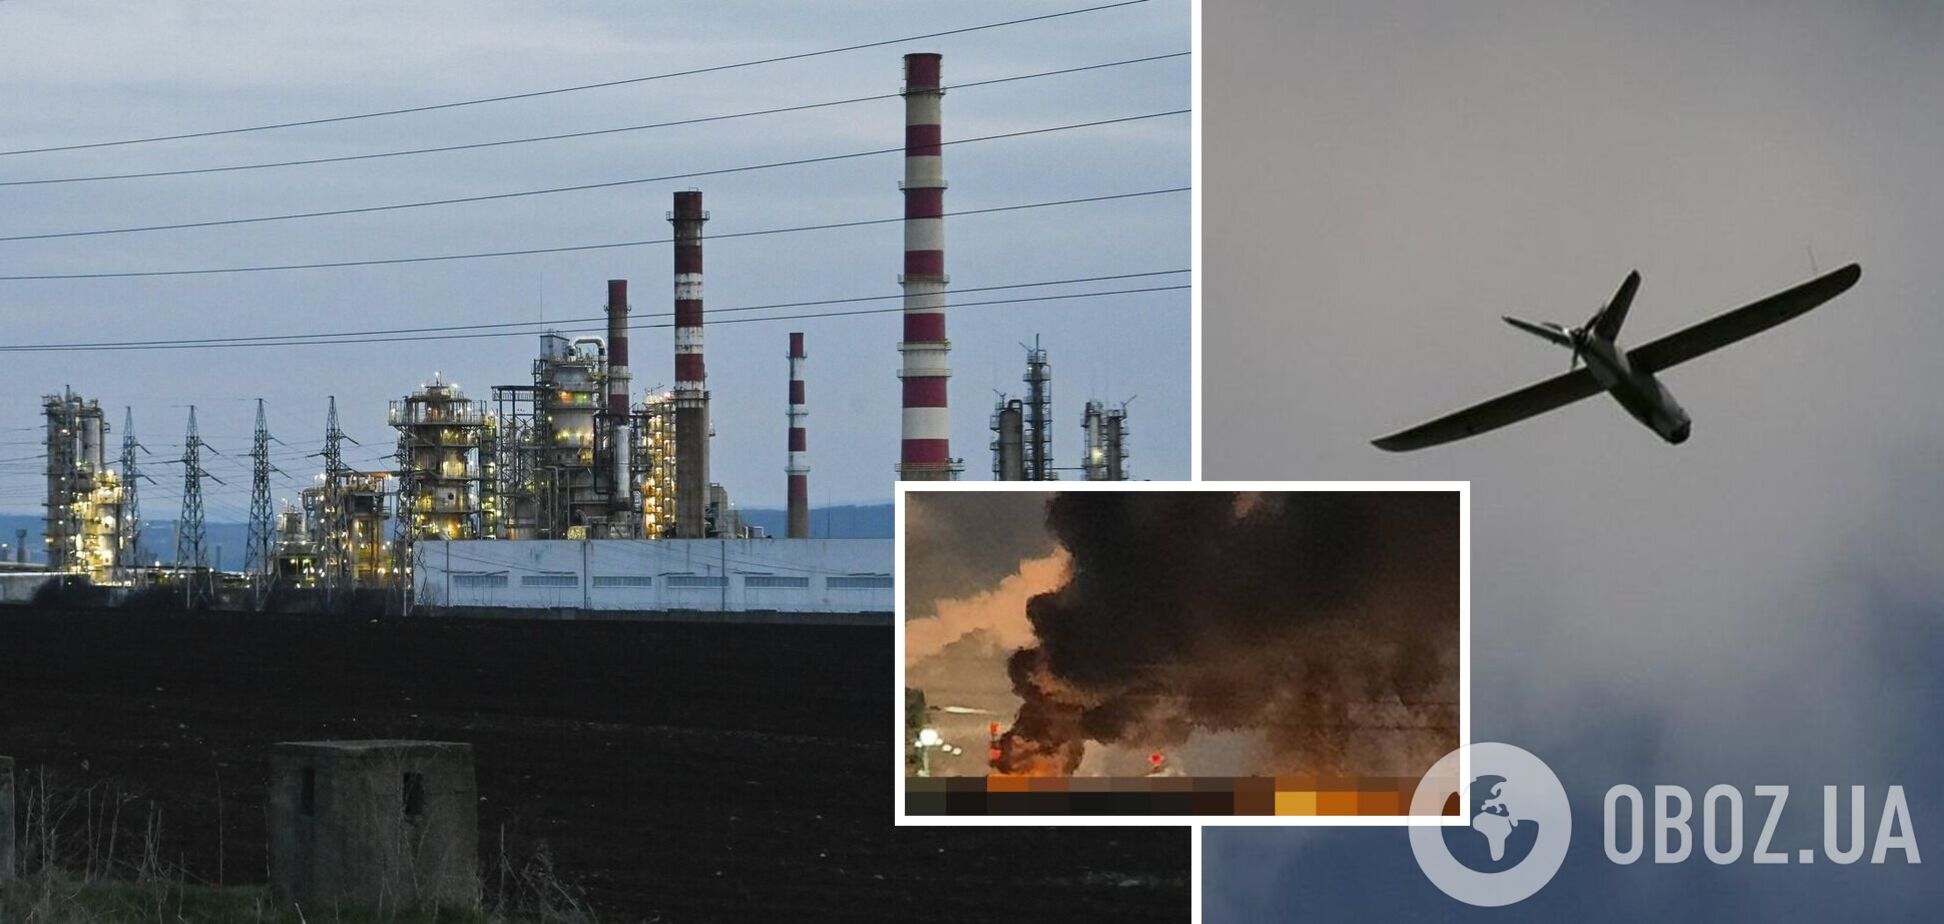 Нефтяной сектор в России переживает кризи